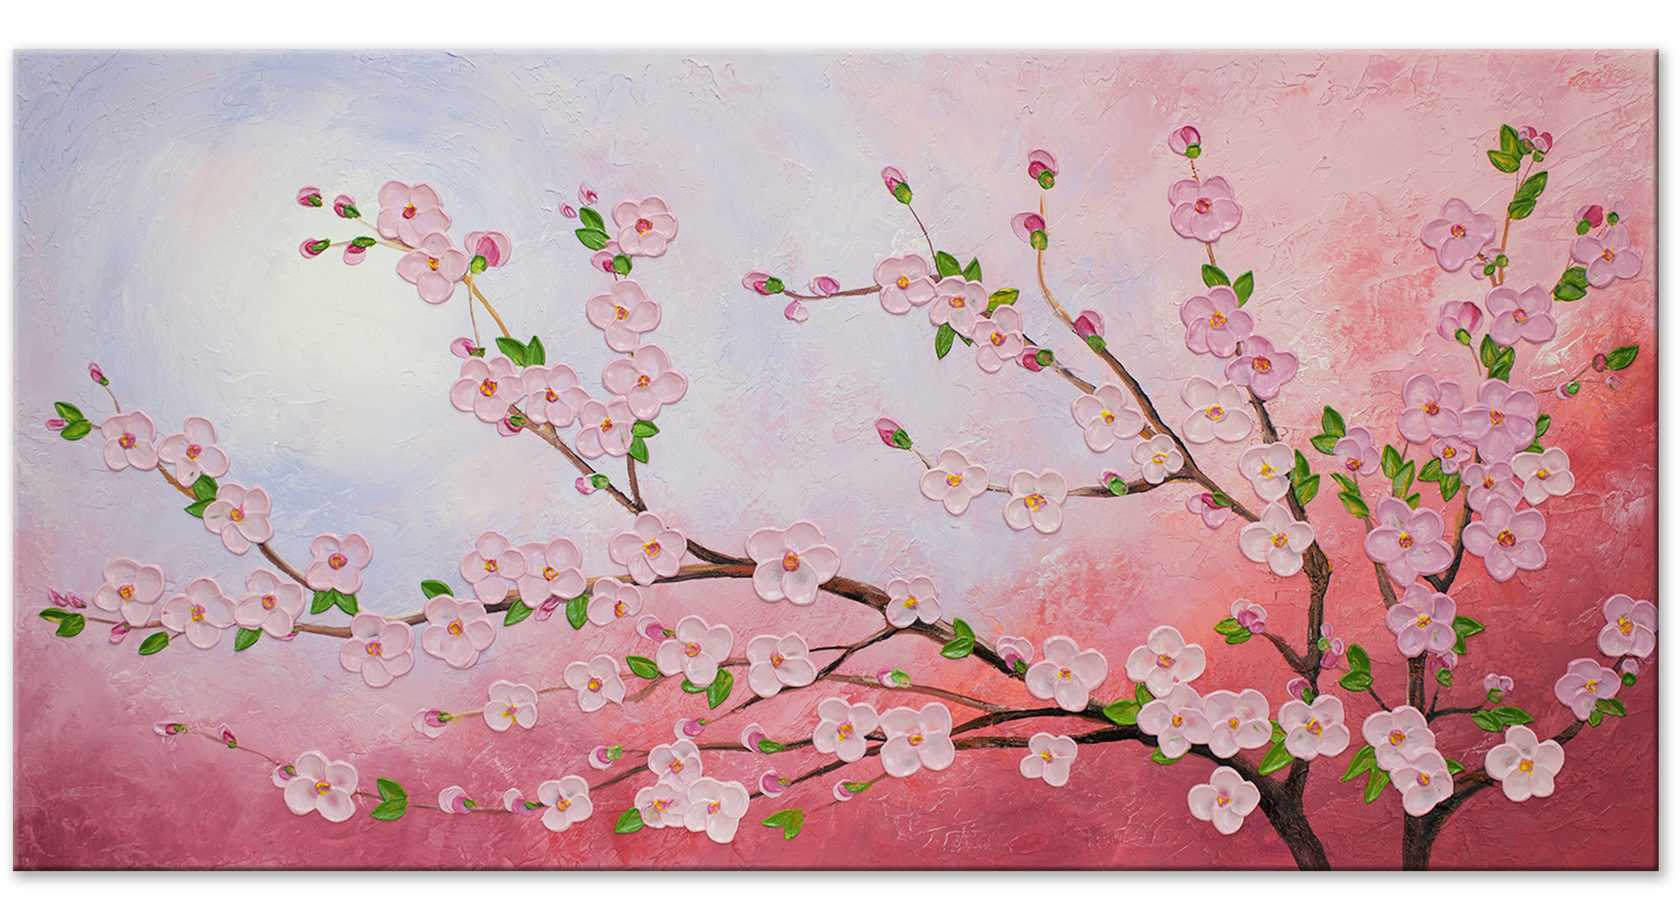 Праздник цветения сакуры в японии — ханами. мастер-класс по рисованию | страна мастеров